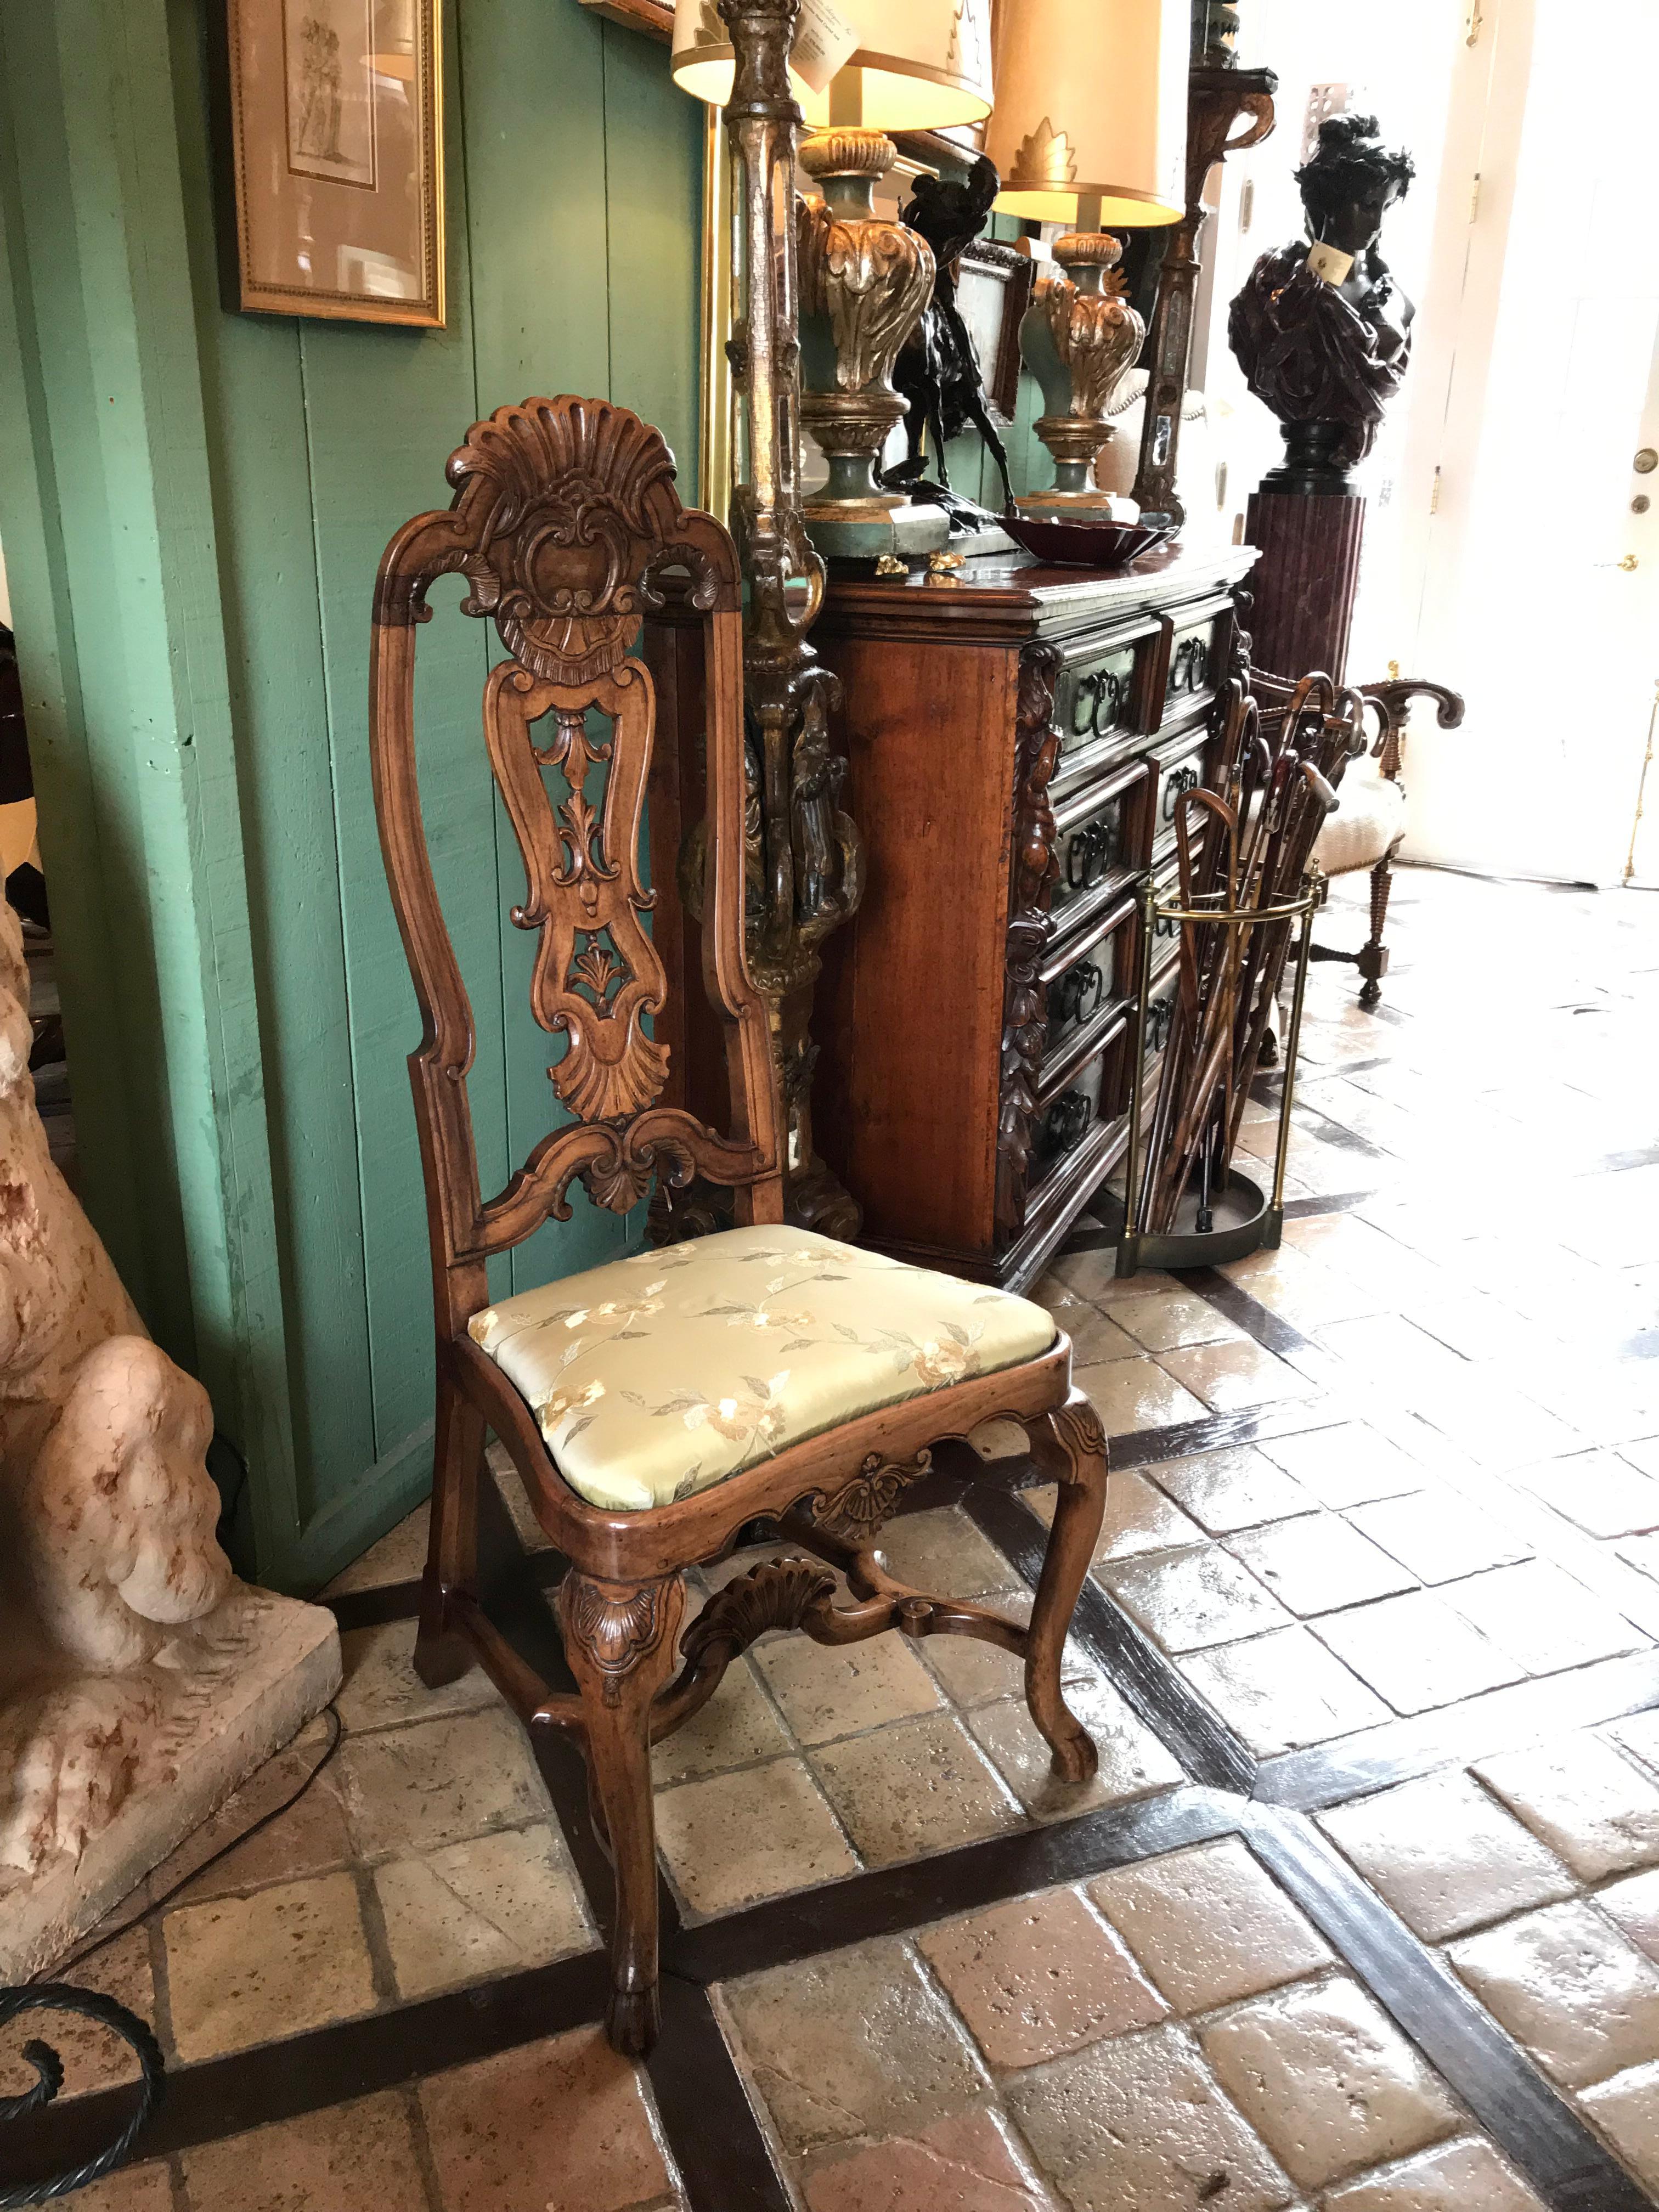 Bonne paire de chaises d'appoint en bois de palissandre sculpté de l'époque coloniale portugaise du XVIIIe siècle. 

Le mobilier portugais du XVIIIe siècle est audacieux, excentrique, intensif et différent de celui de tout autre pays. Ils ont leur